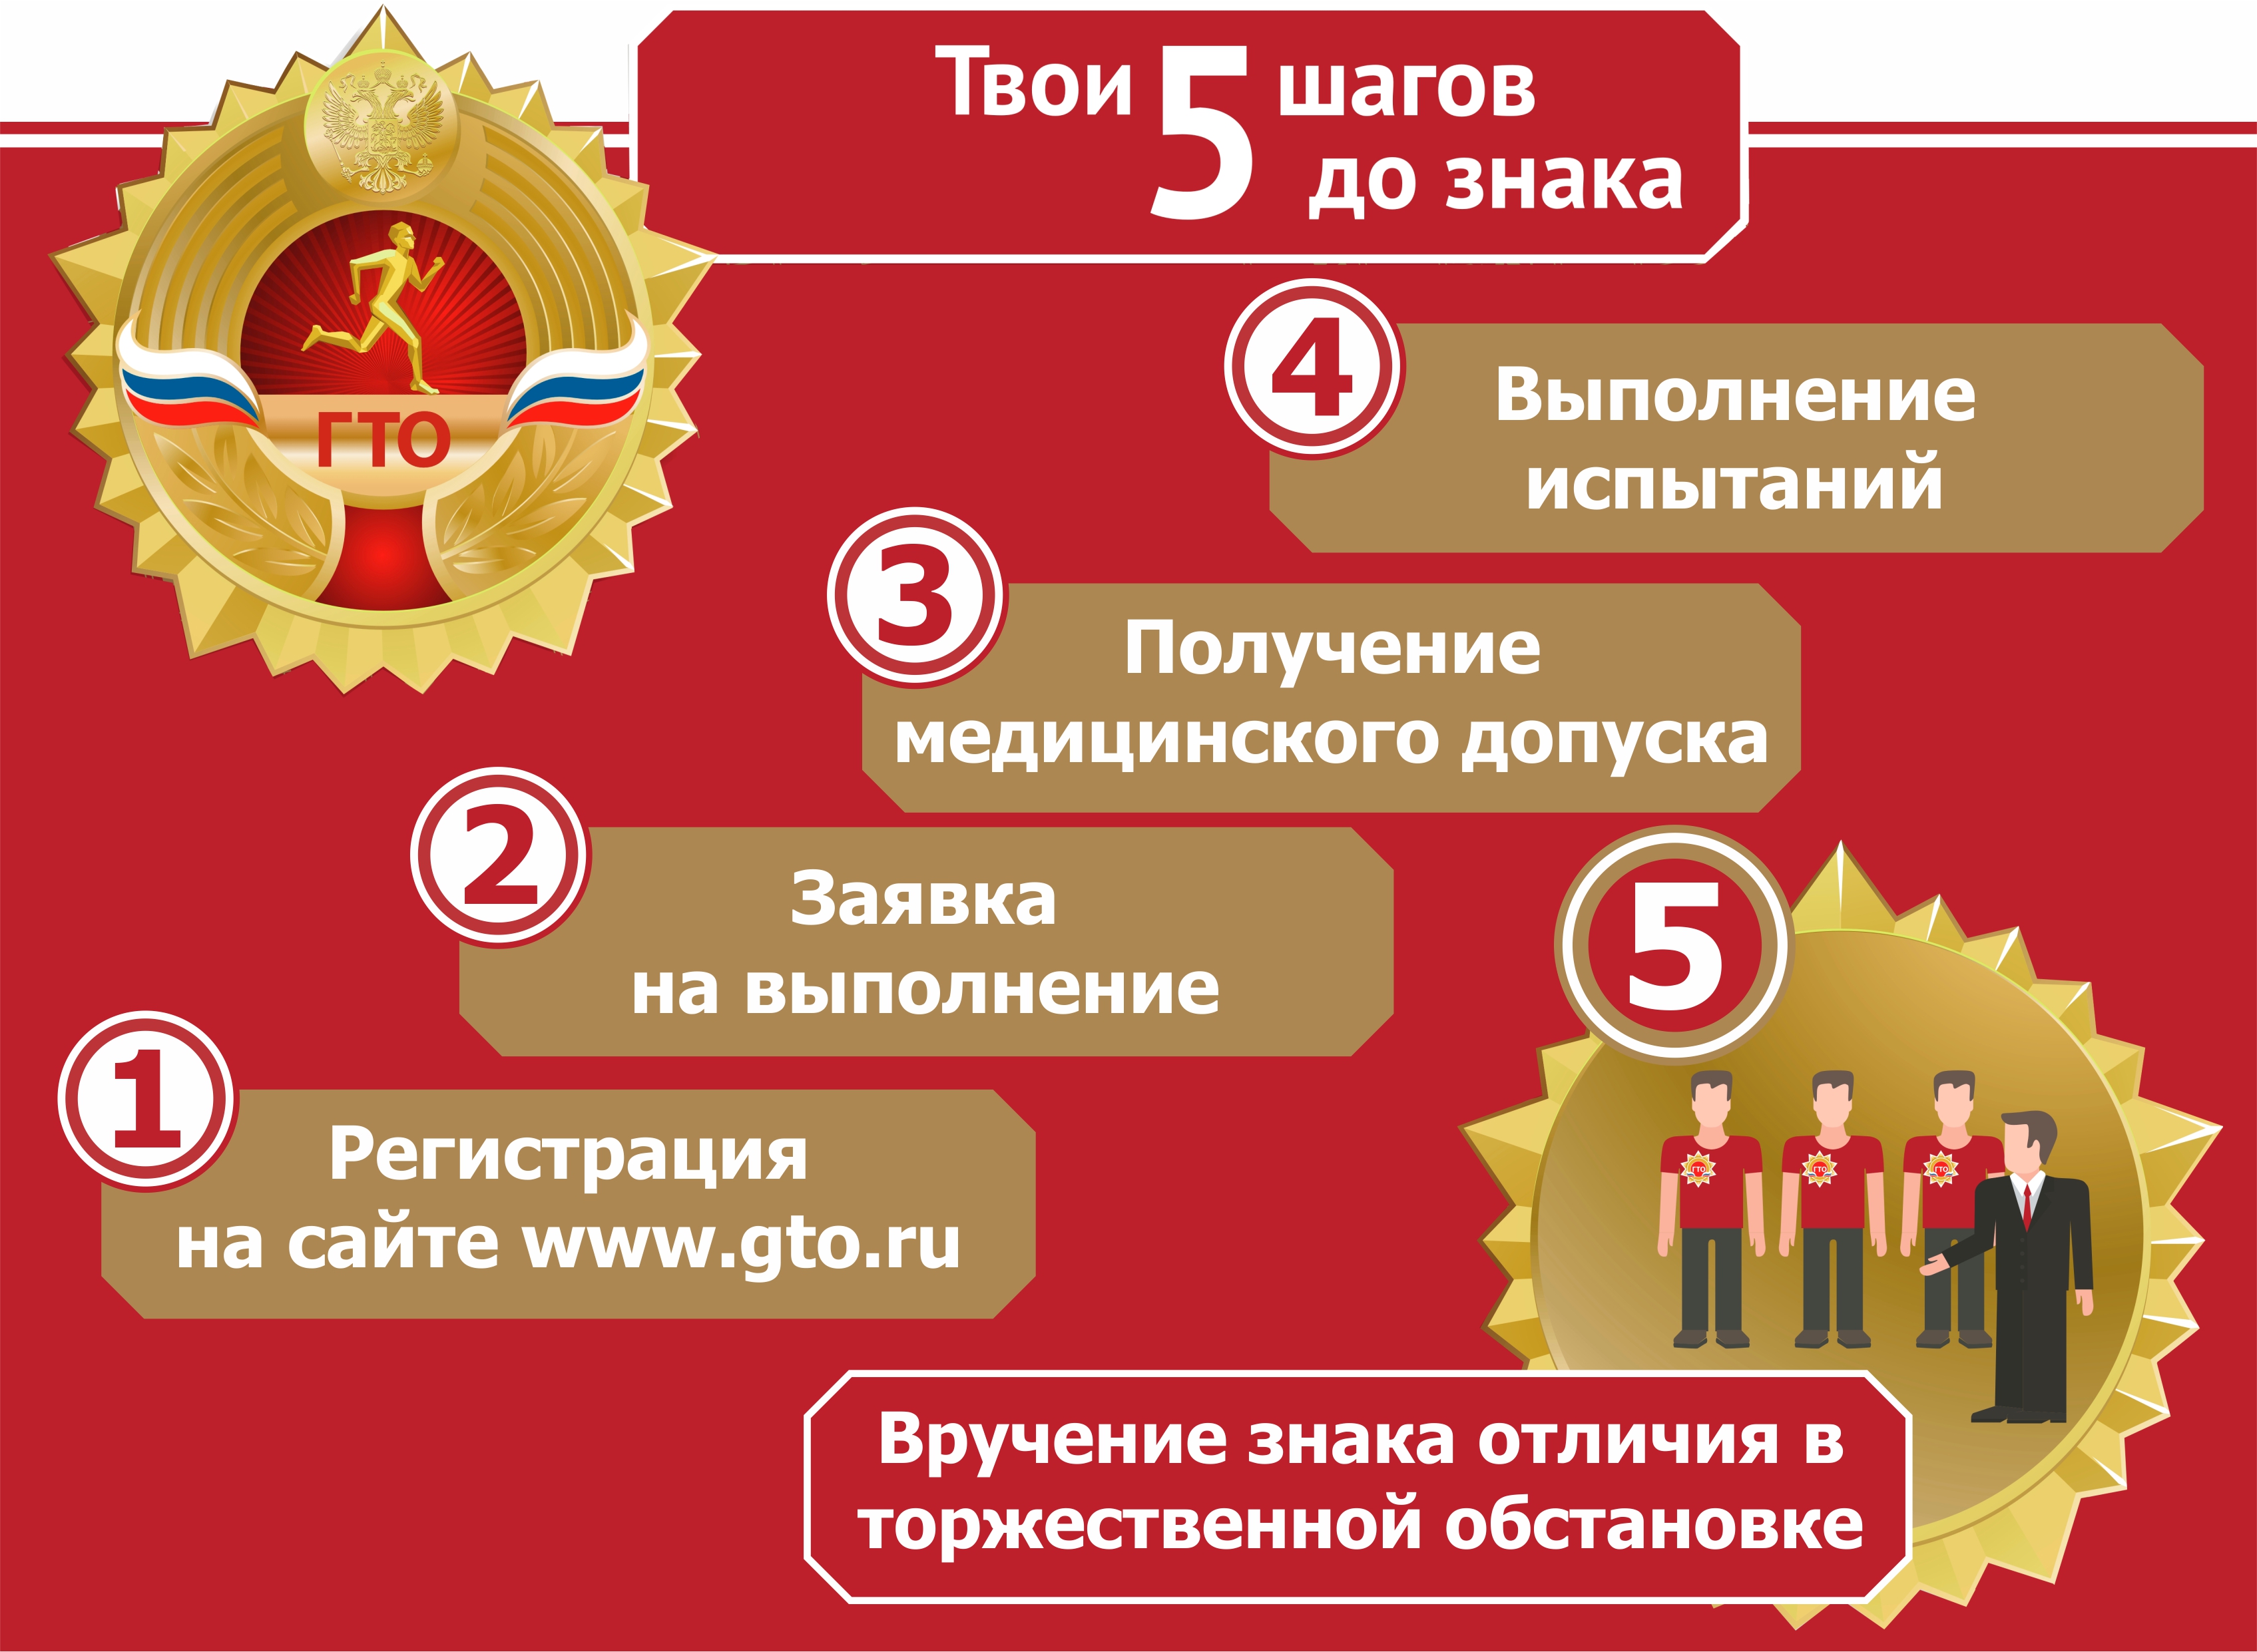 В рамках Фестиваля ГТО в Зеленоградске 13 августа все желающие смогут сдать норматив и получить значок